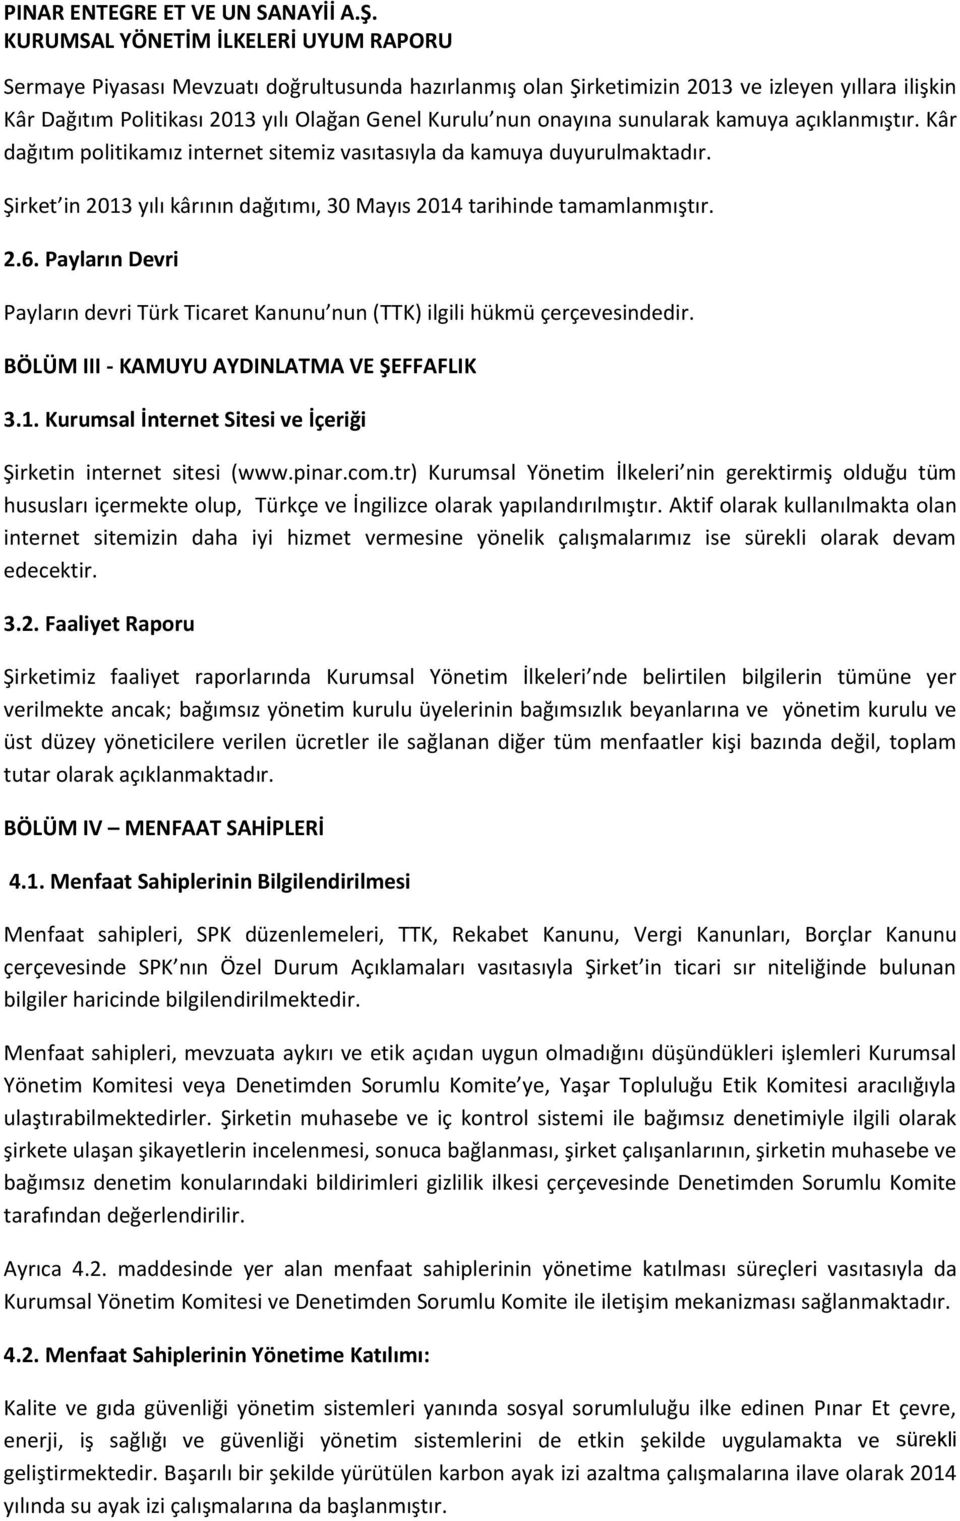 Payların Devri Payların devri Türk Ticaret Kanunu nun (TTK) ilgili hükmü çerçevesindedir. BÖLÜM III - KAMUYU AYDINLATMA VE ŞEFFAFLIK 3.1.